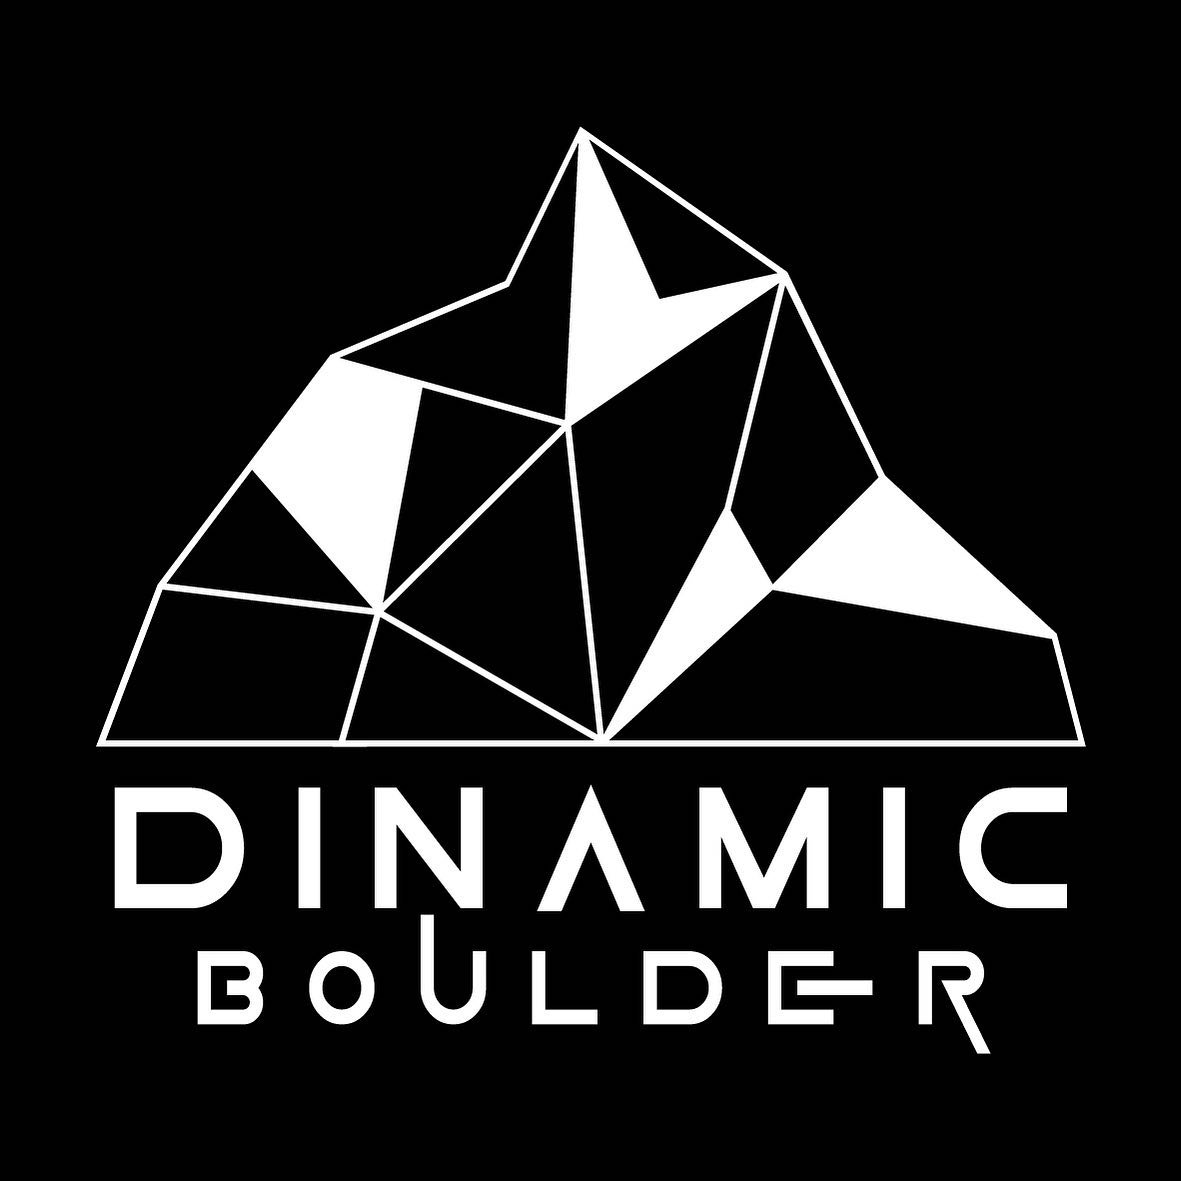 Dinamic Boulder